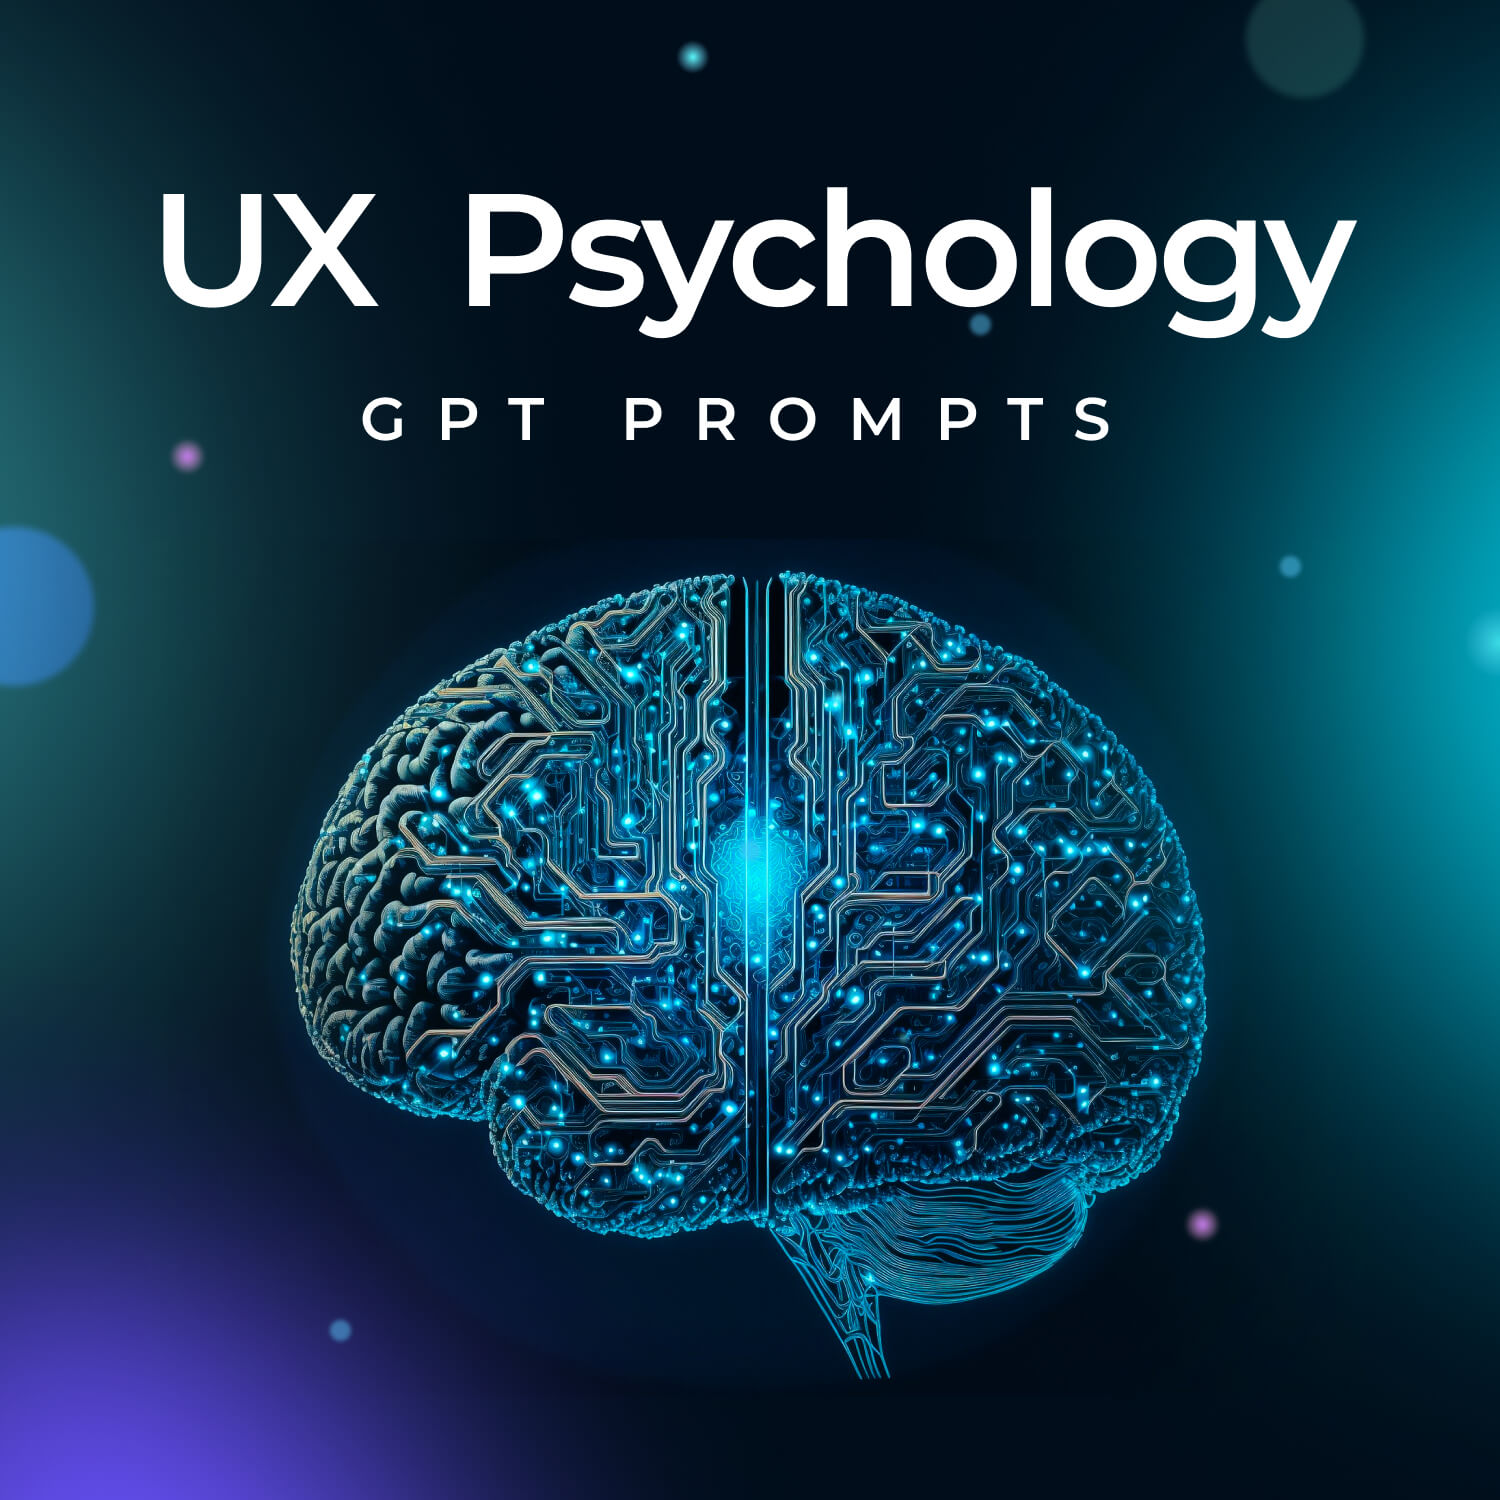 UX Psychology GPT Prompts